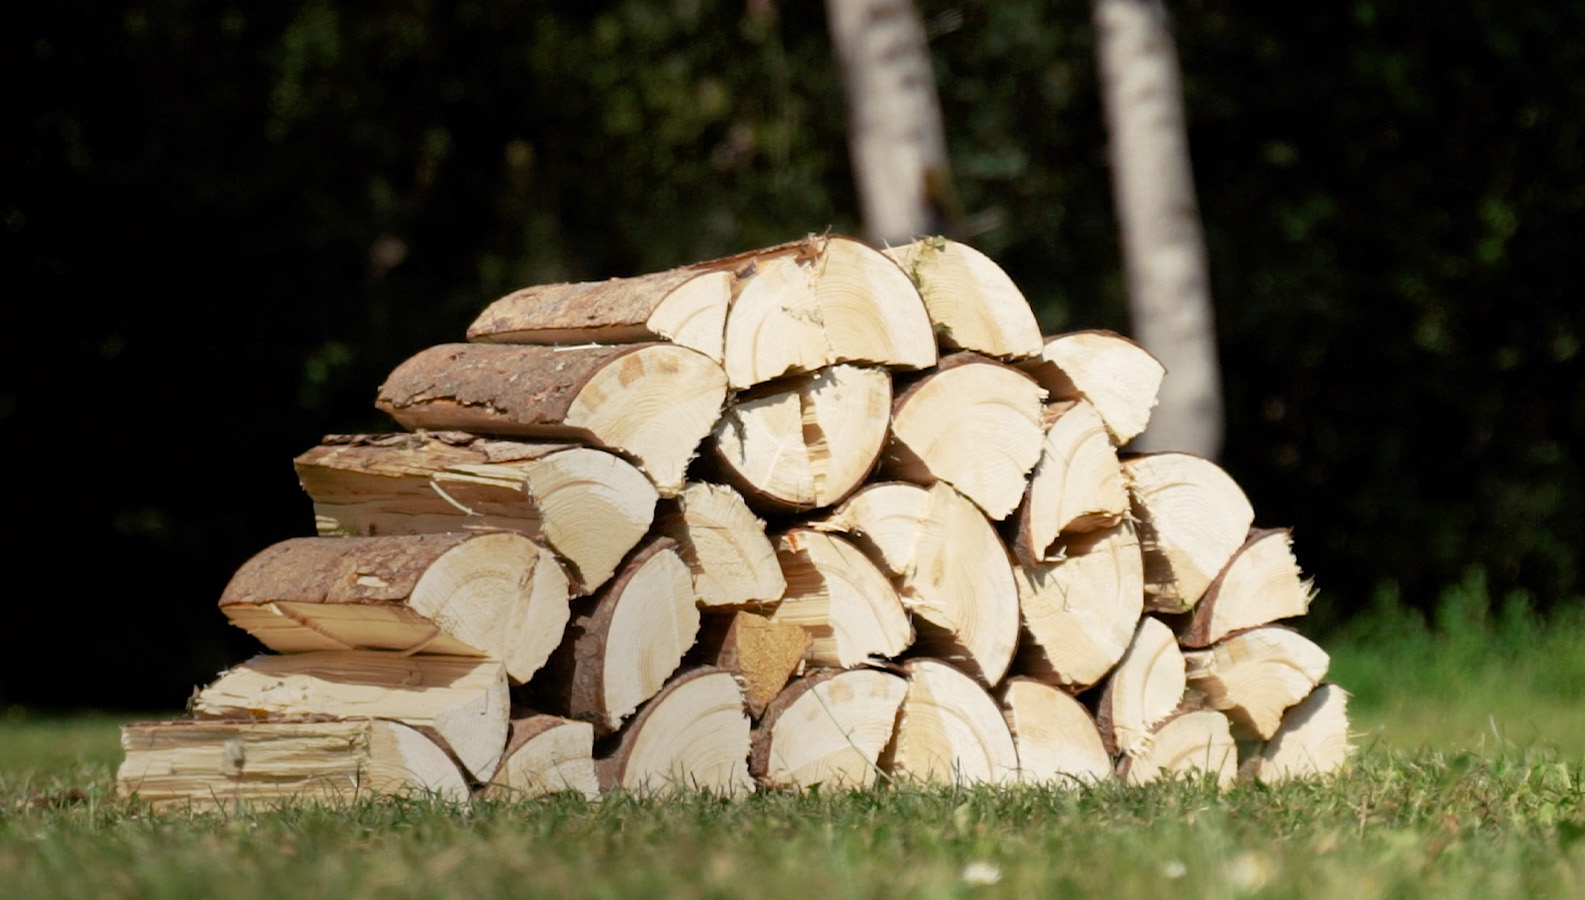 Stapel houtblokken na het zagen van brandhout